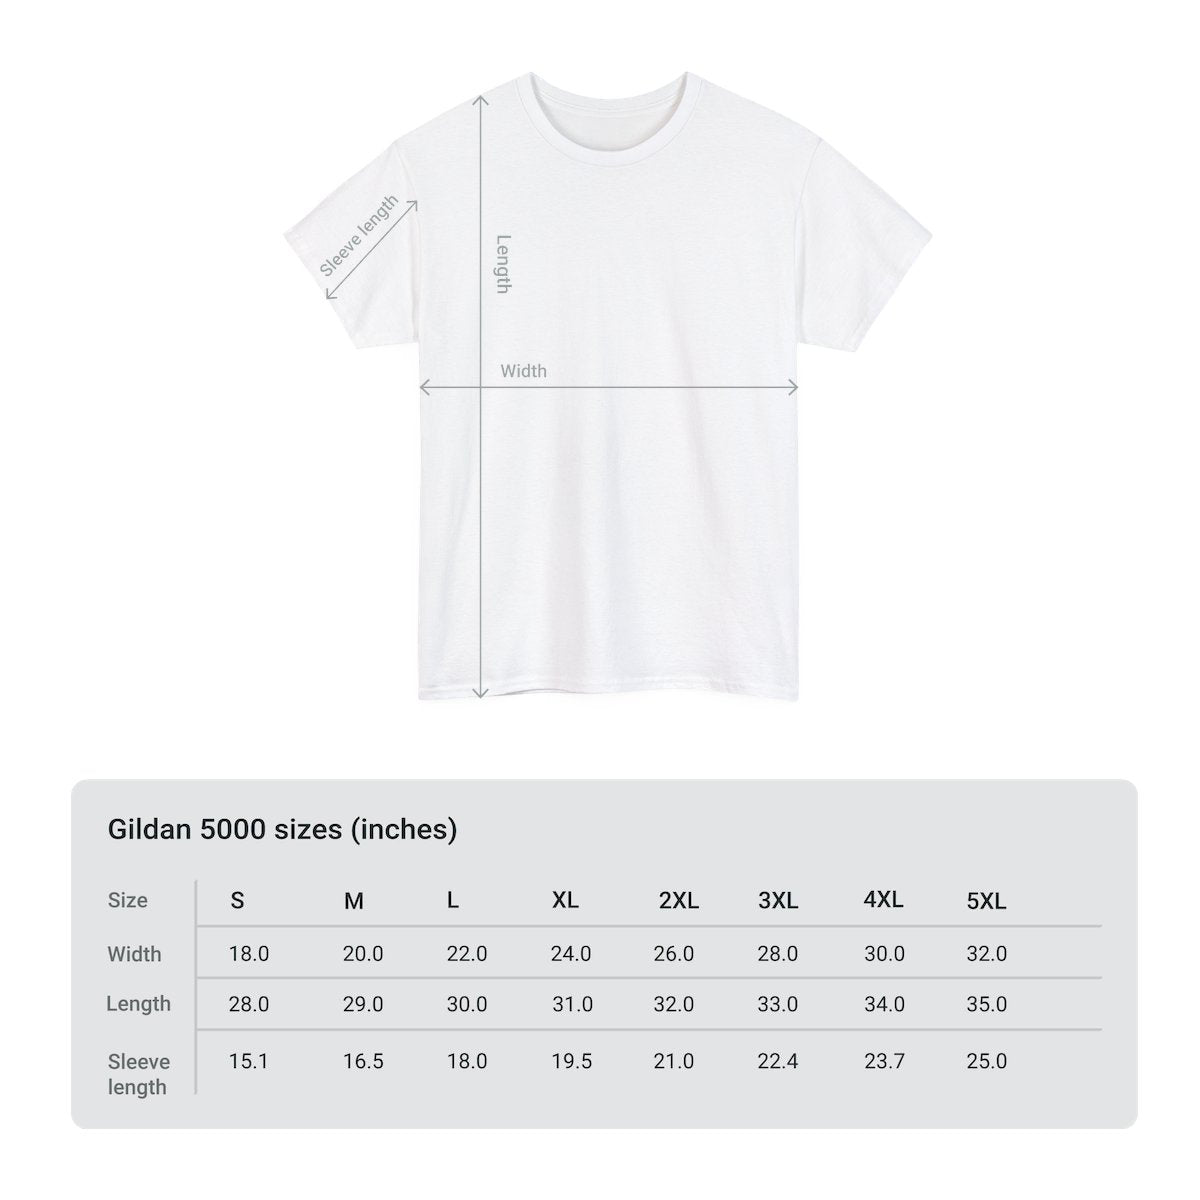 Giannis Antetokounmpo Milwaukee Bucks High Quality Printed Unisex Heavy Cotton T-shirt